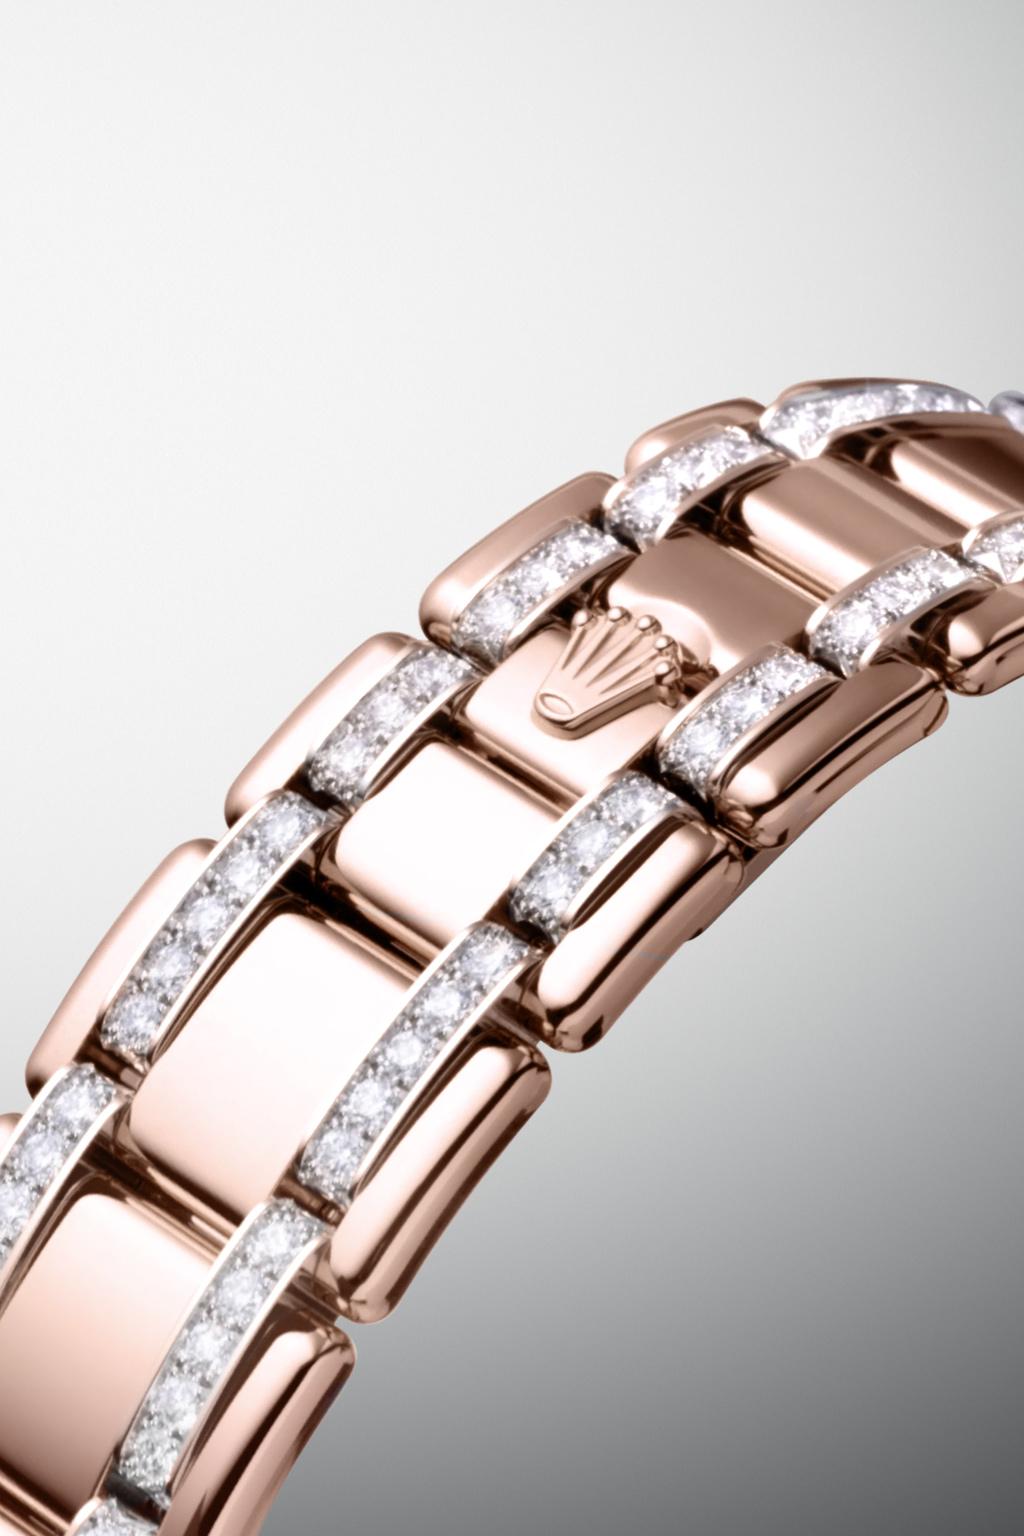 Características PULSEIRA PEARLMASTER Admiravelmente curvada com seus elos maciços em ouro 18 quilates, a pulseira Pearlmaster confere ao relógio mais presença e conforto em sua utilização.